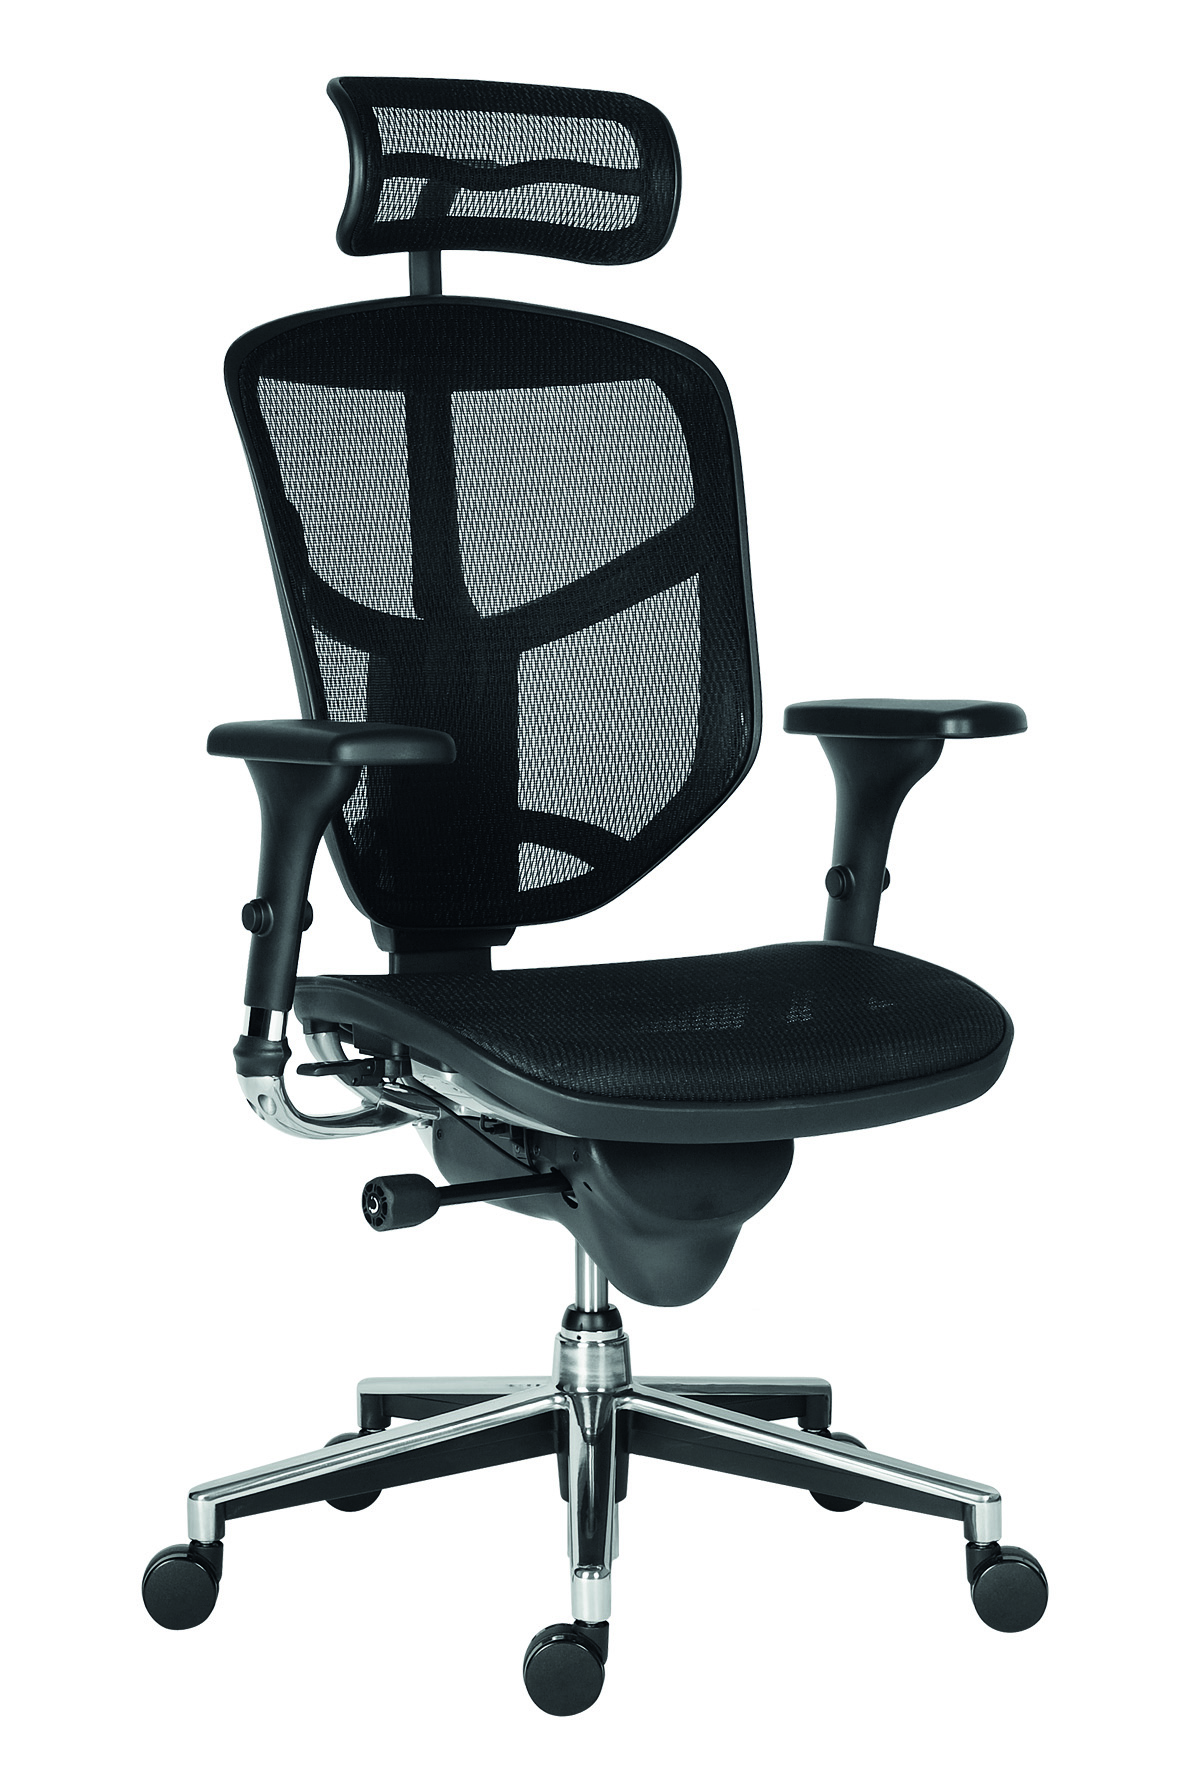 Kancelářská židle - Enjoy  - Opěrka + sedák černá síťovina